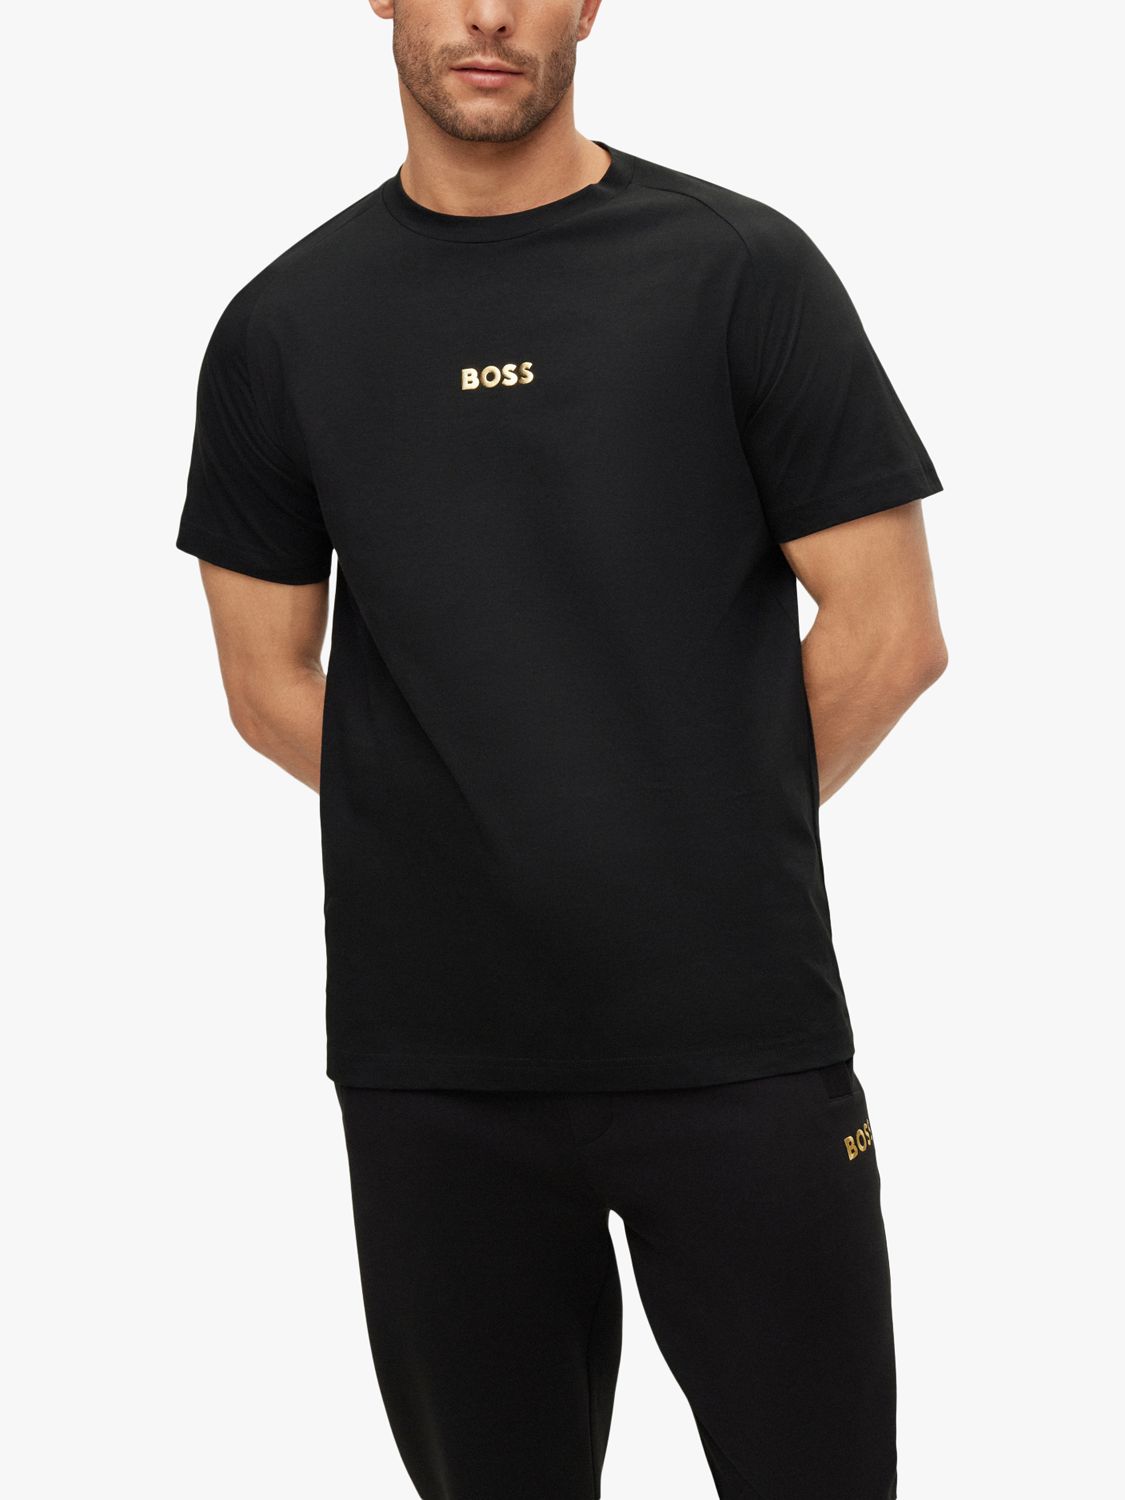 Sleeve Black, Tee Logo T-Shirt, Short S BOSS Cotton 2